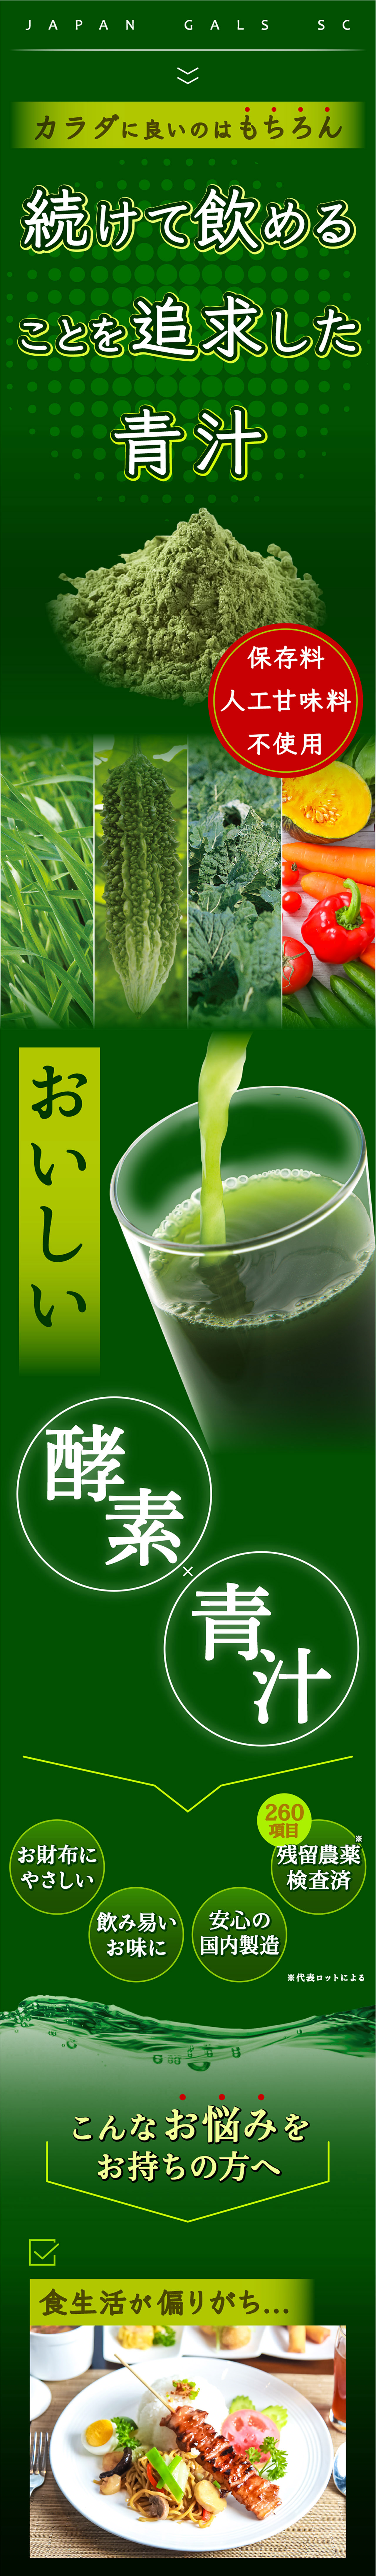 おいしい酵素青汁 JAPANGALSsc公式サイト